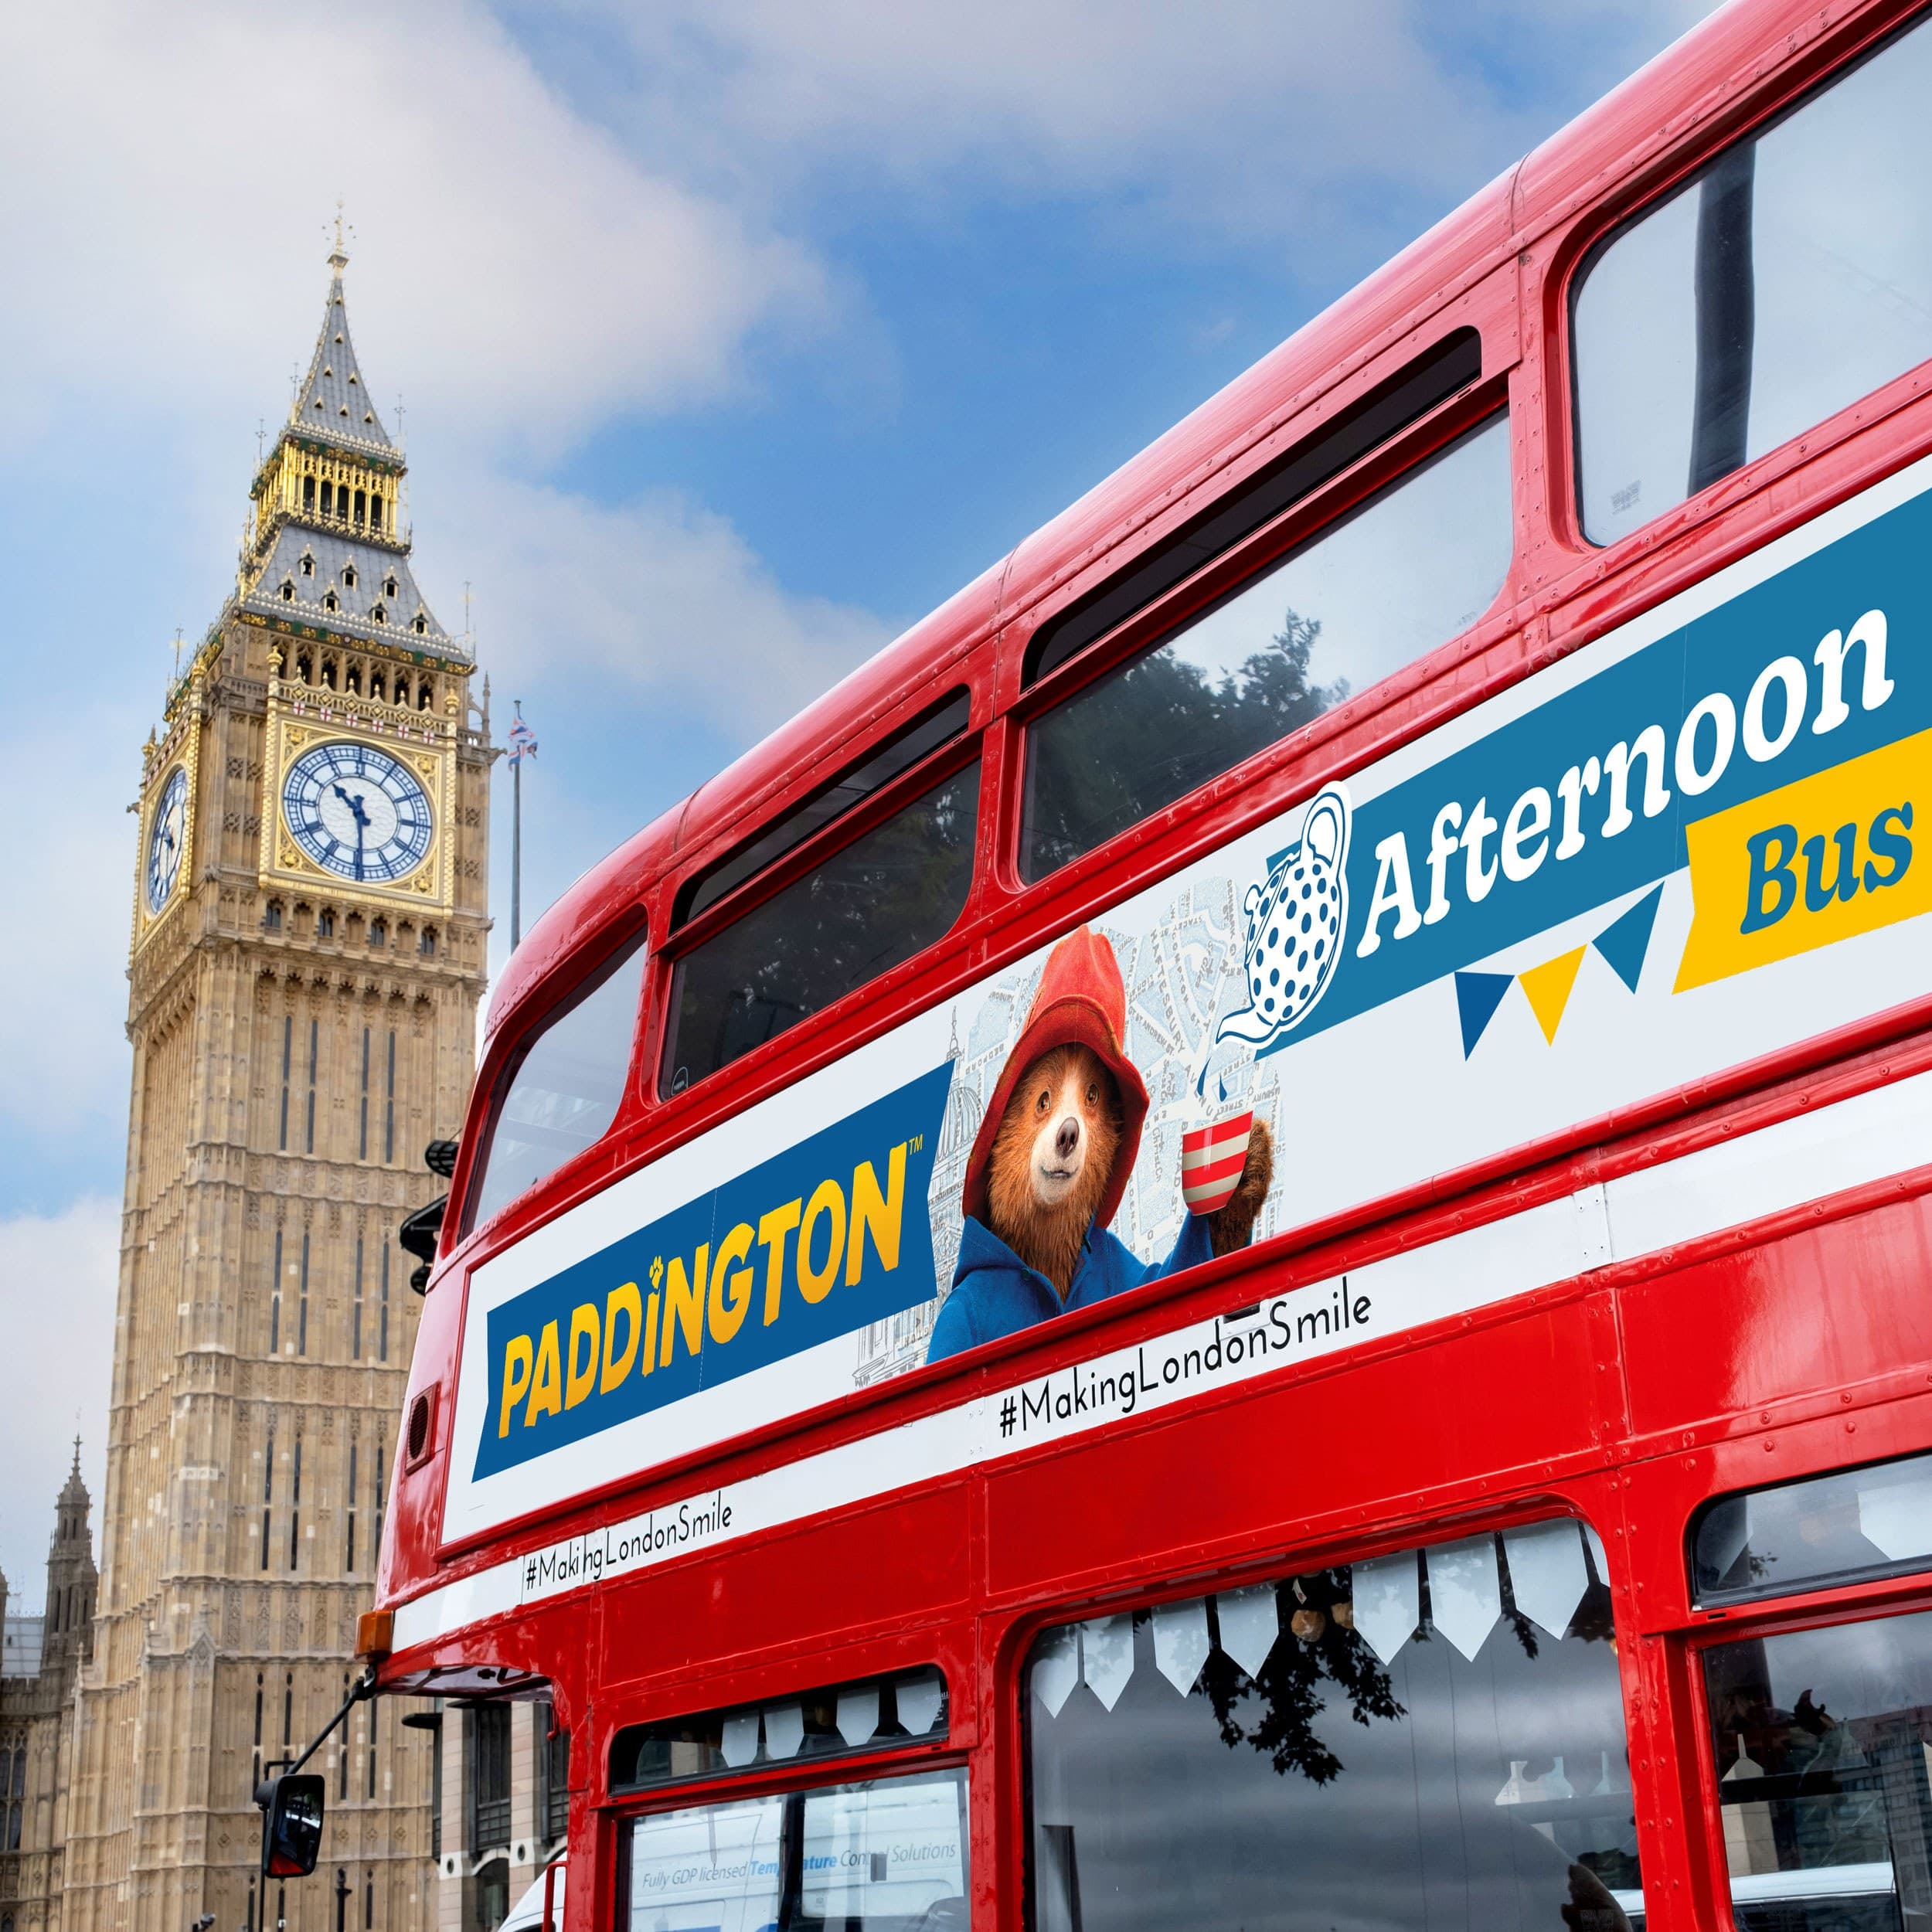 celebrating 10 years of bus tours - Paddington Bus Tour